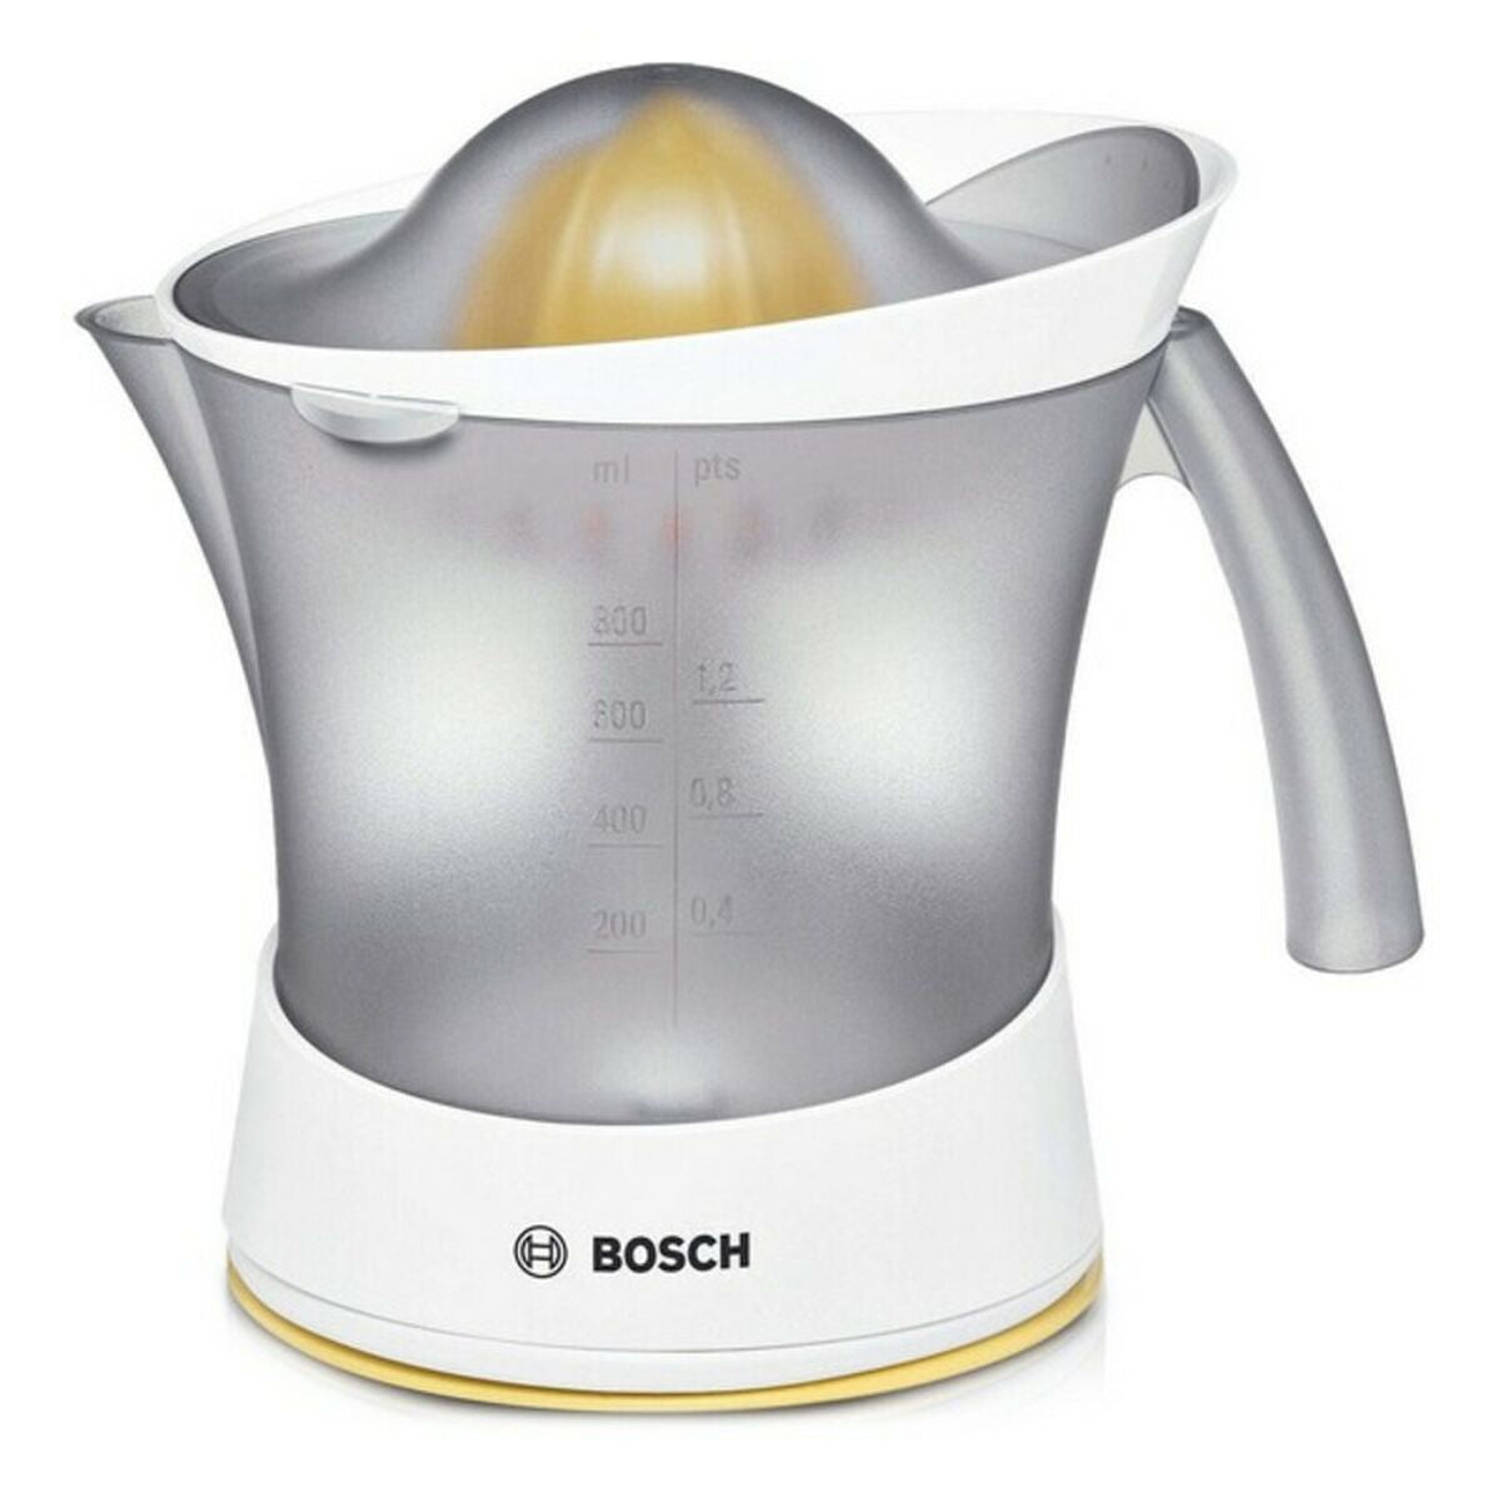 Bosch MCP 3500 citruspers